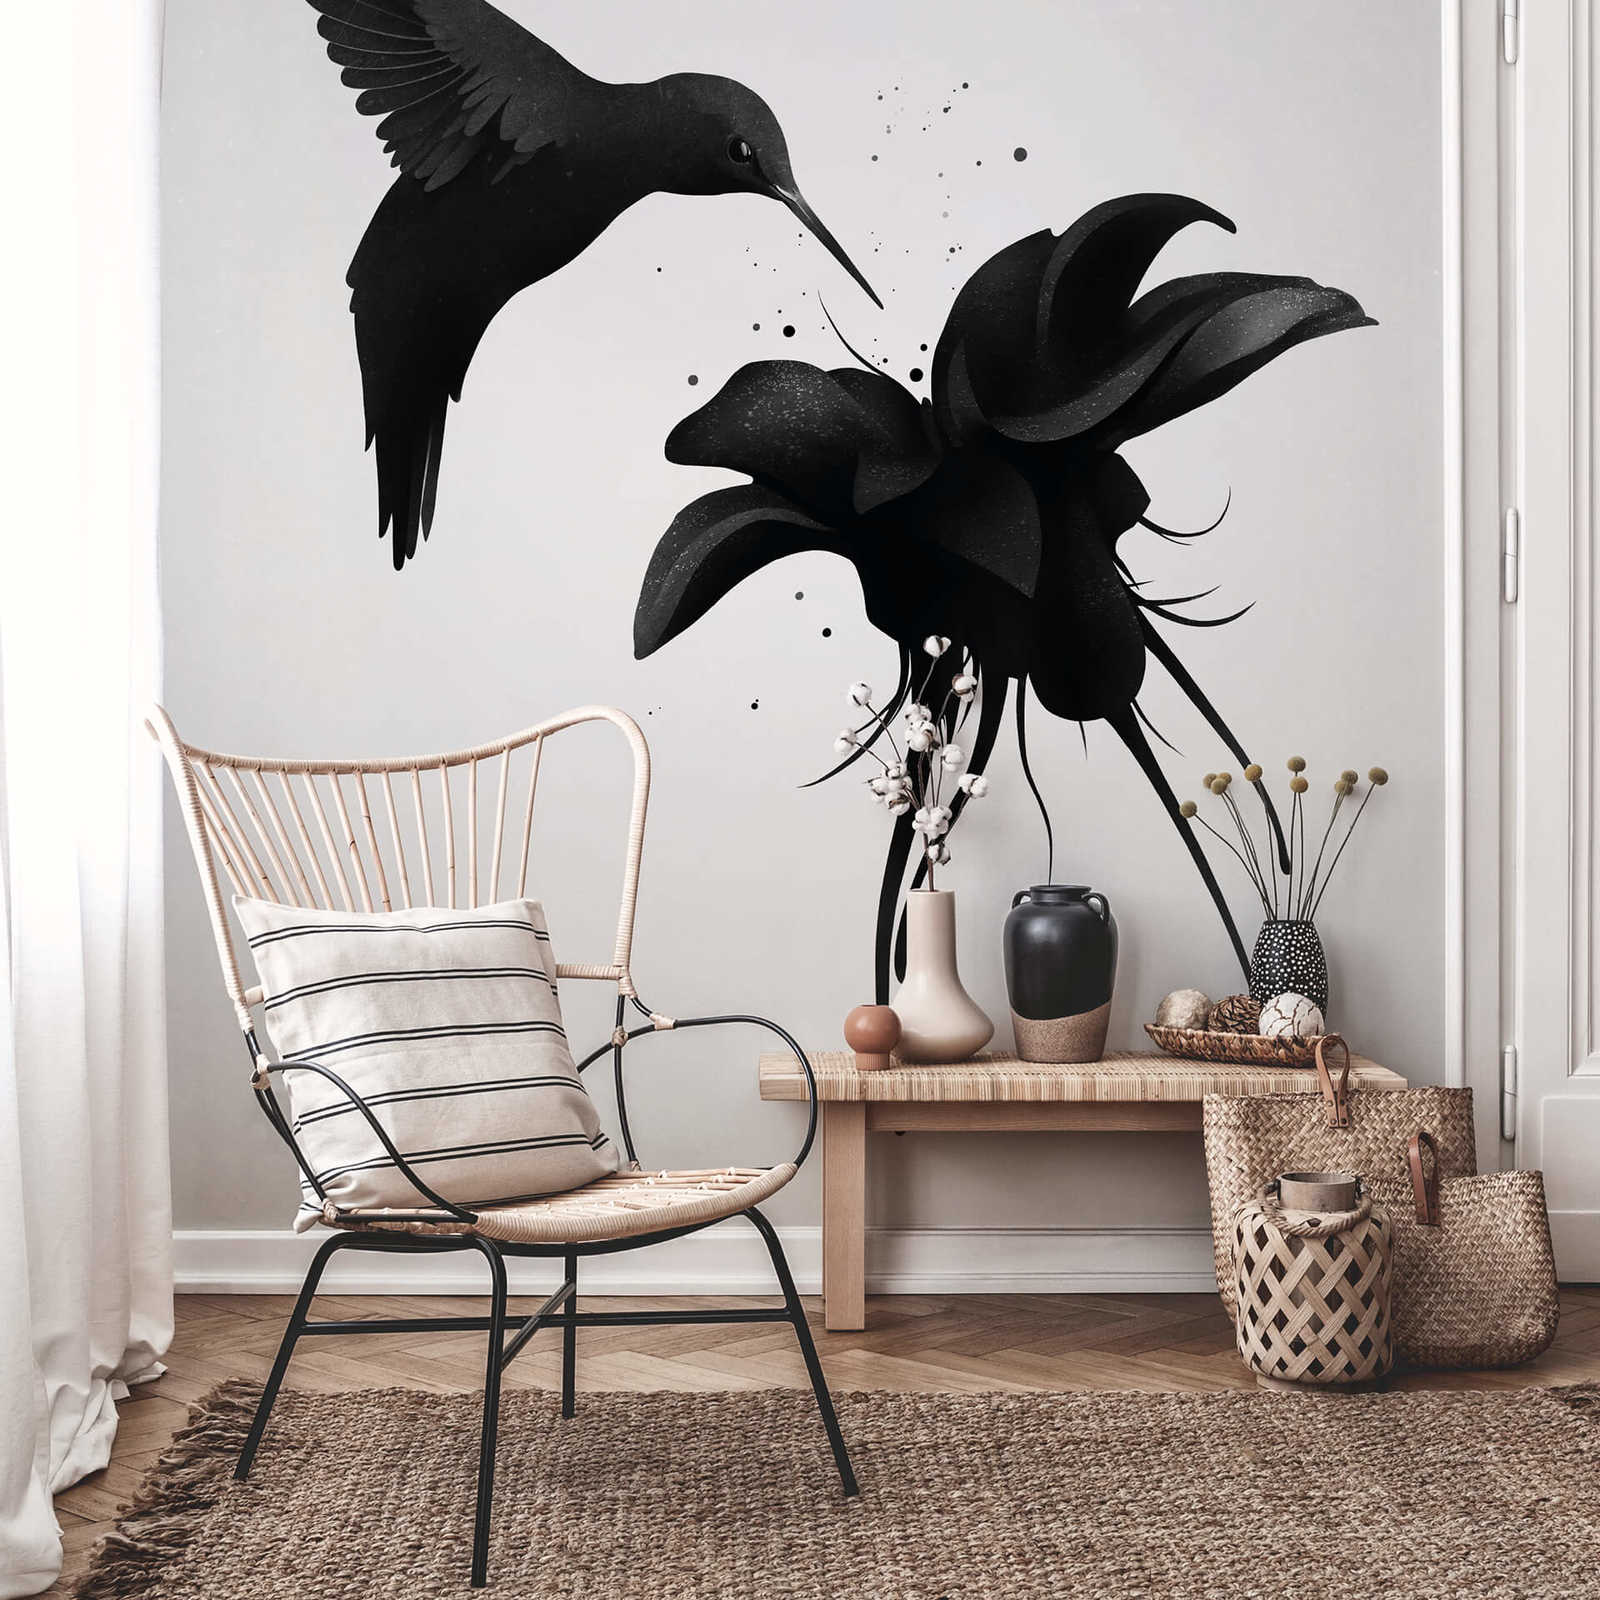             Muurschildering Vogel op Bloem - Zwart, Wit
        